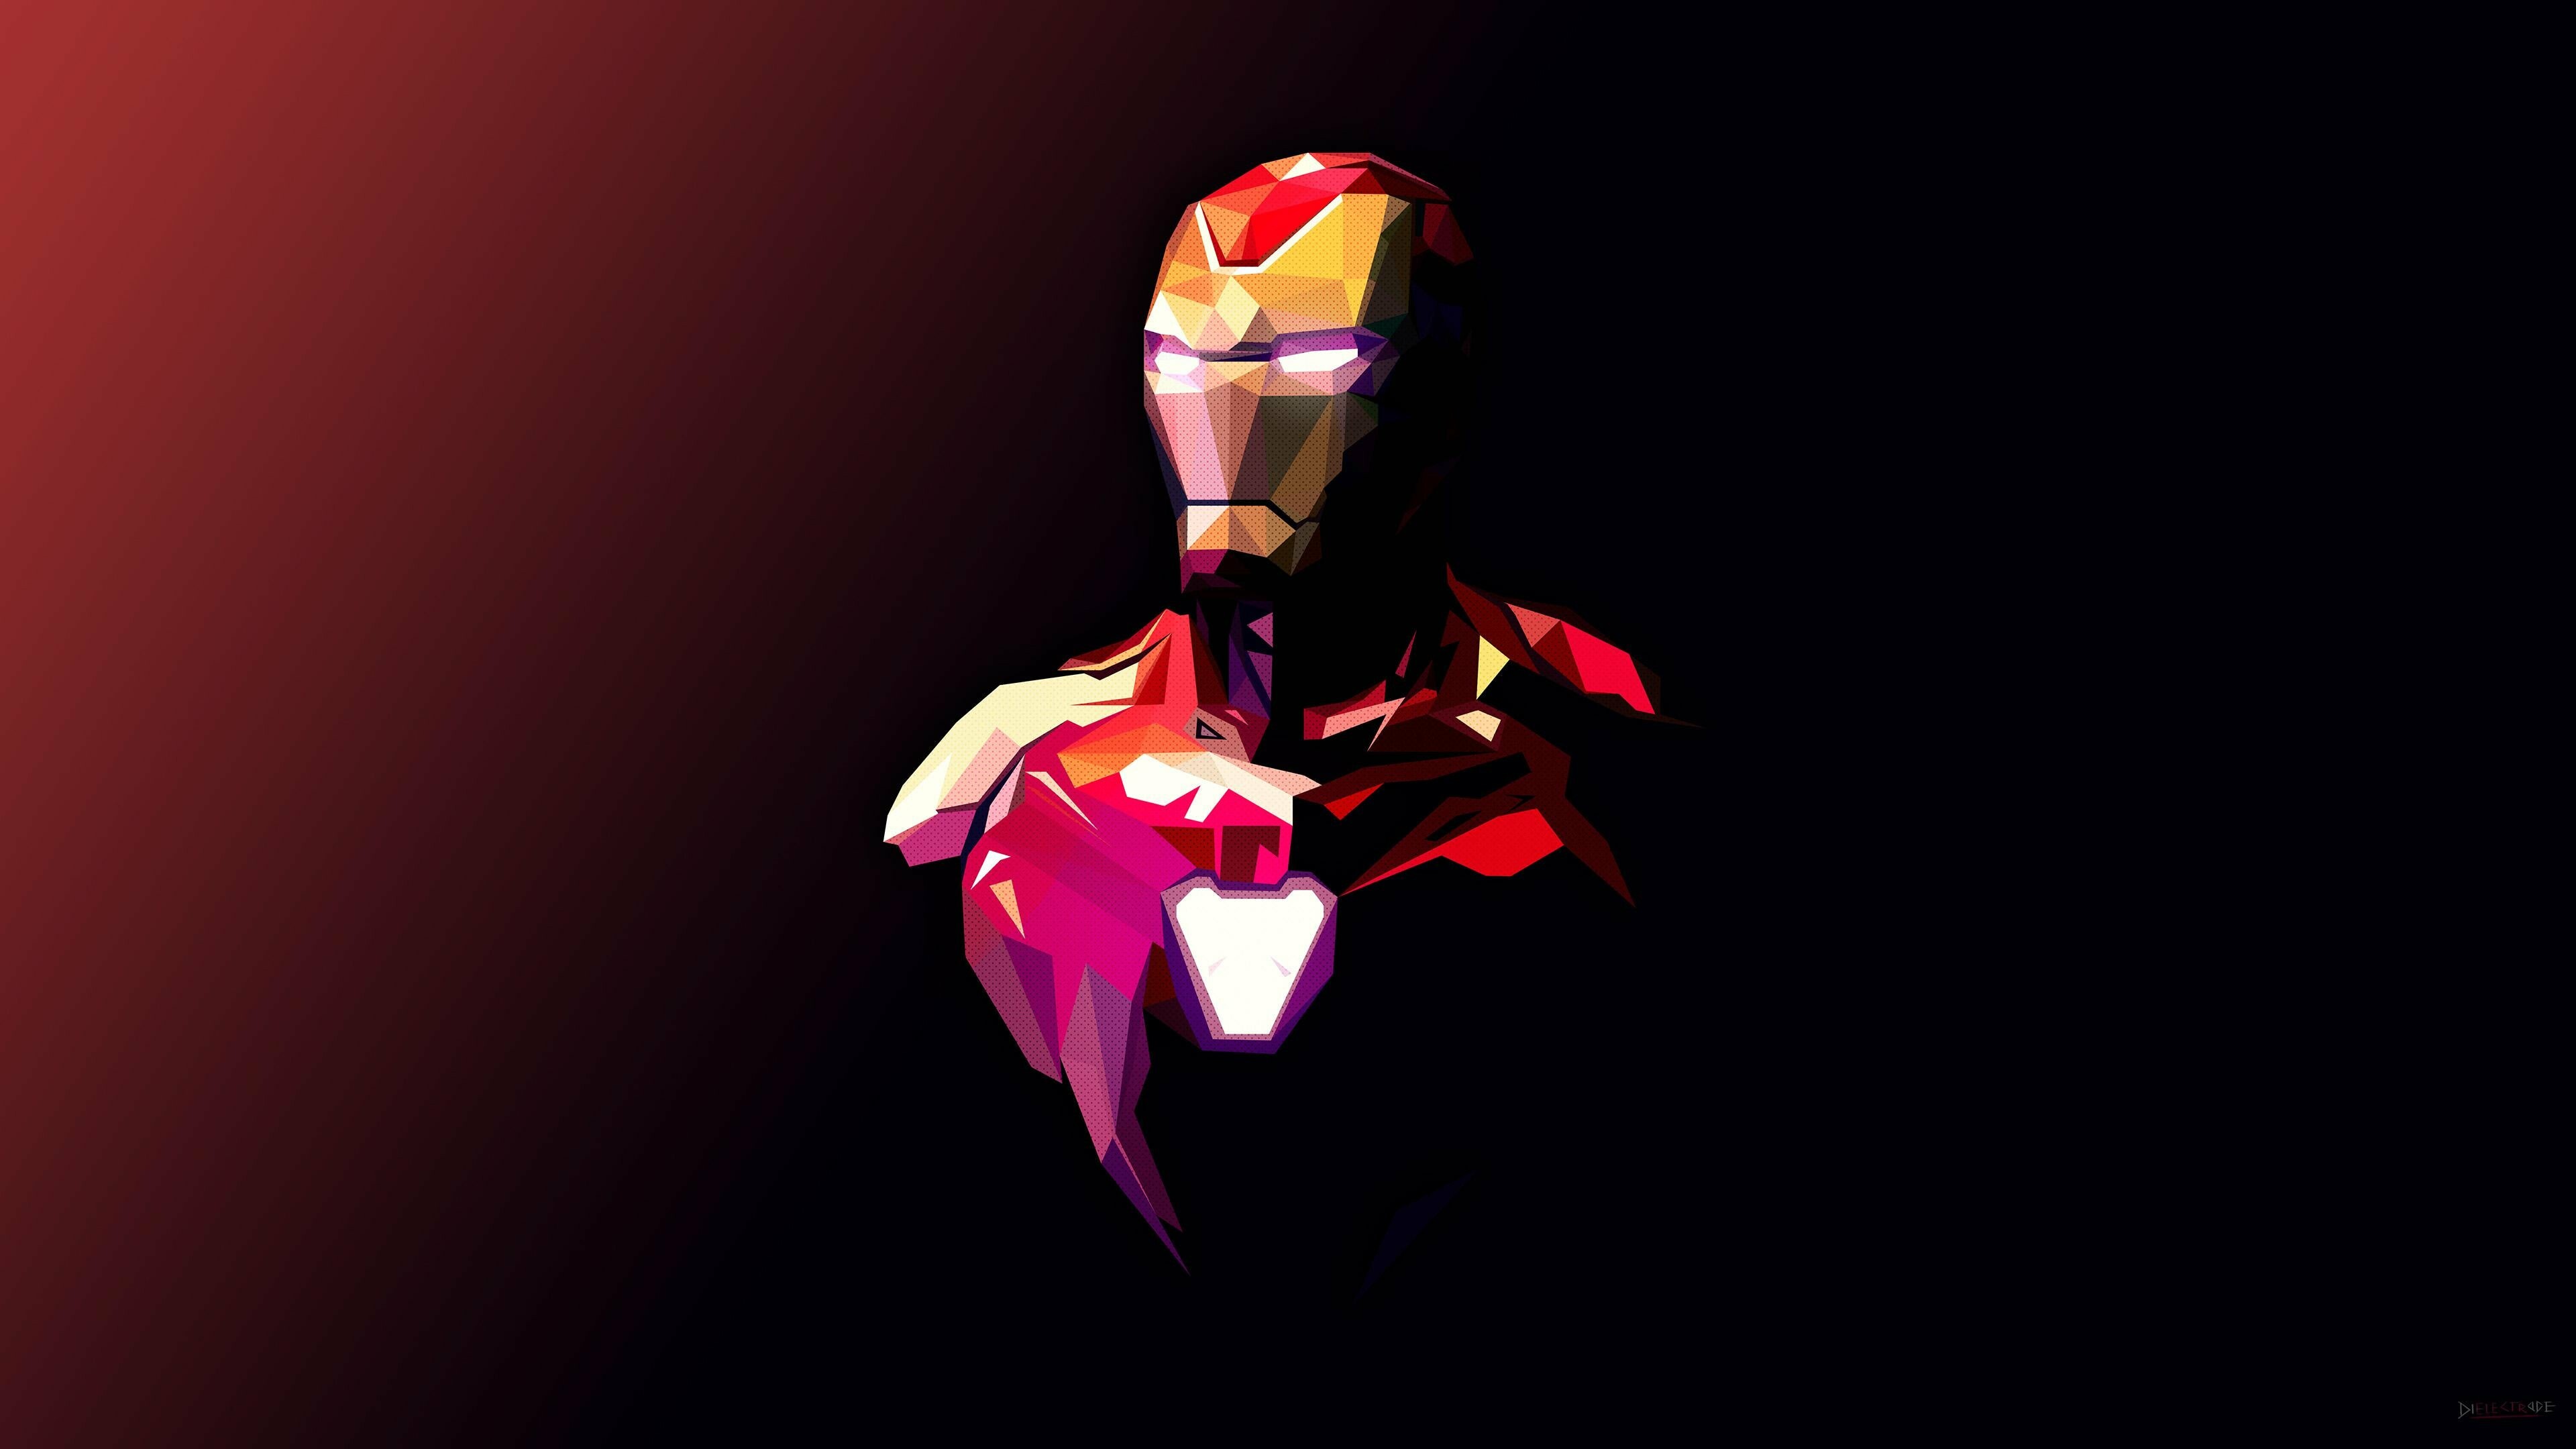 Avengers: Iron Man suit from Avenger's Endgame. 3840x2160 4K Wallpaper.